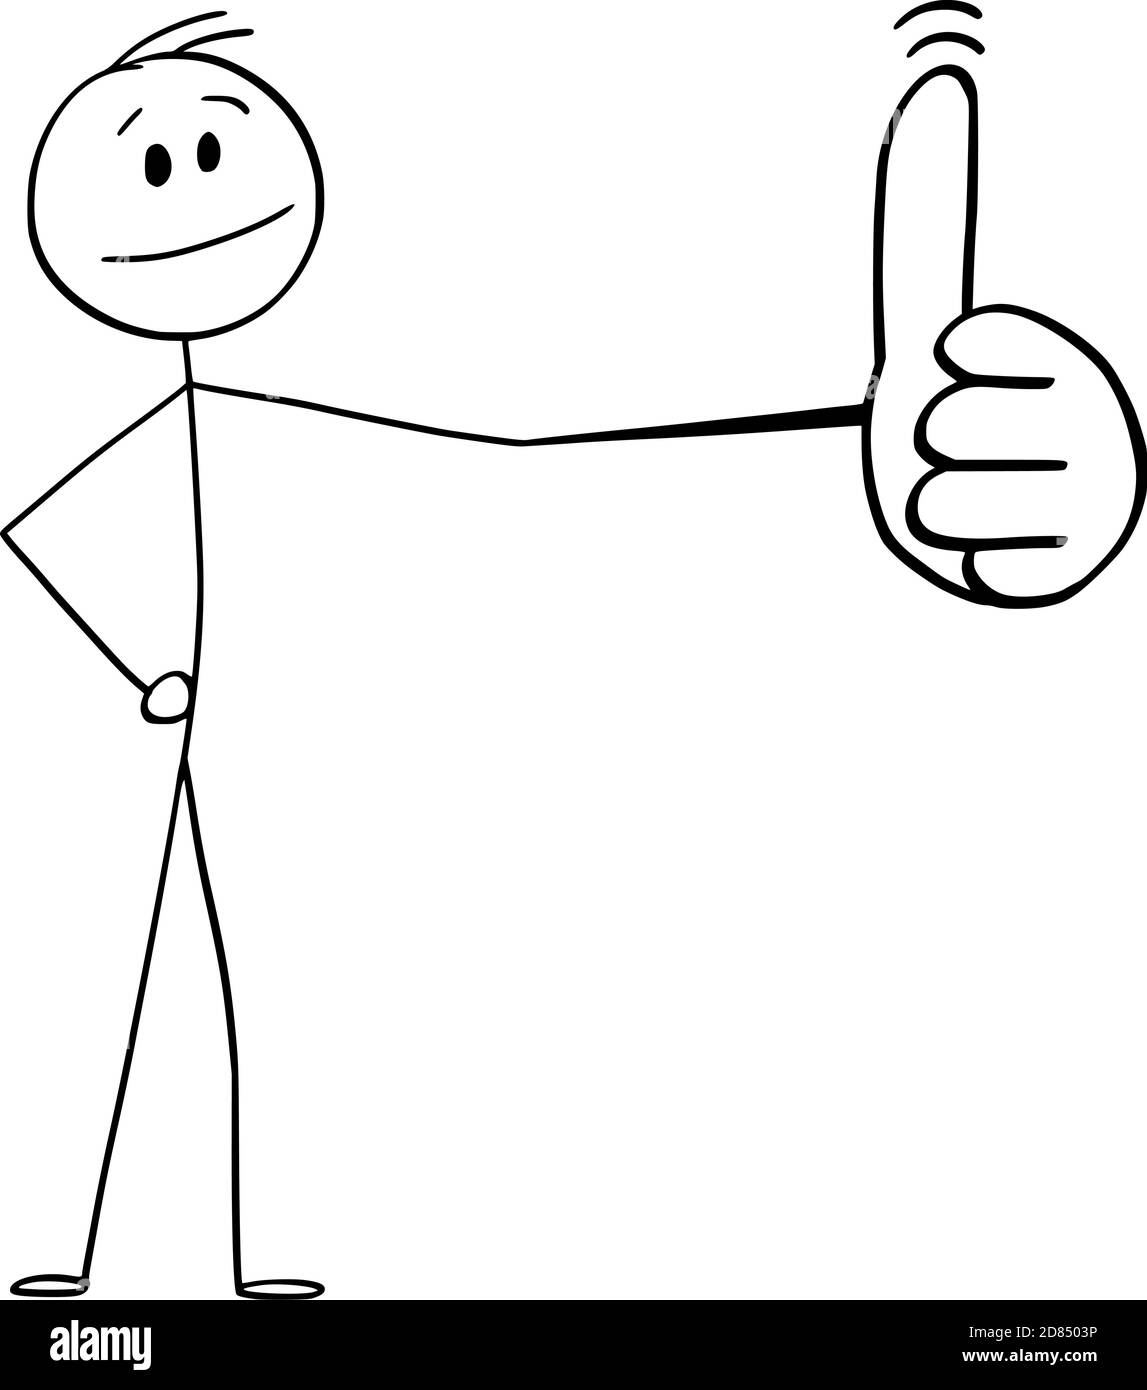 Vektor Cartoon Stick Figur Illustration von Mann oder Geschäftsmann zeigt großen Daumen nach oben Geste. Symbol für Erfolg oder Positivität. Stock Vektor